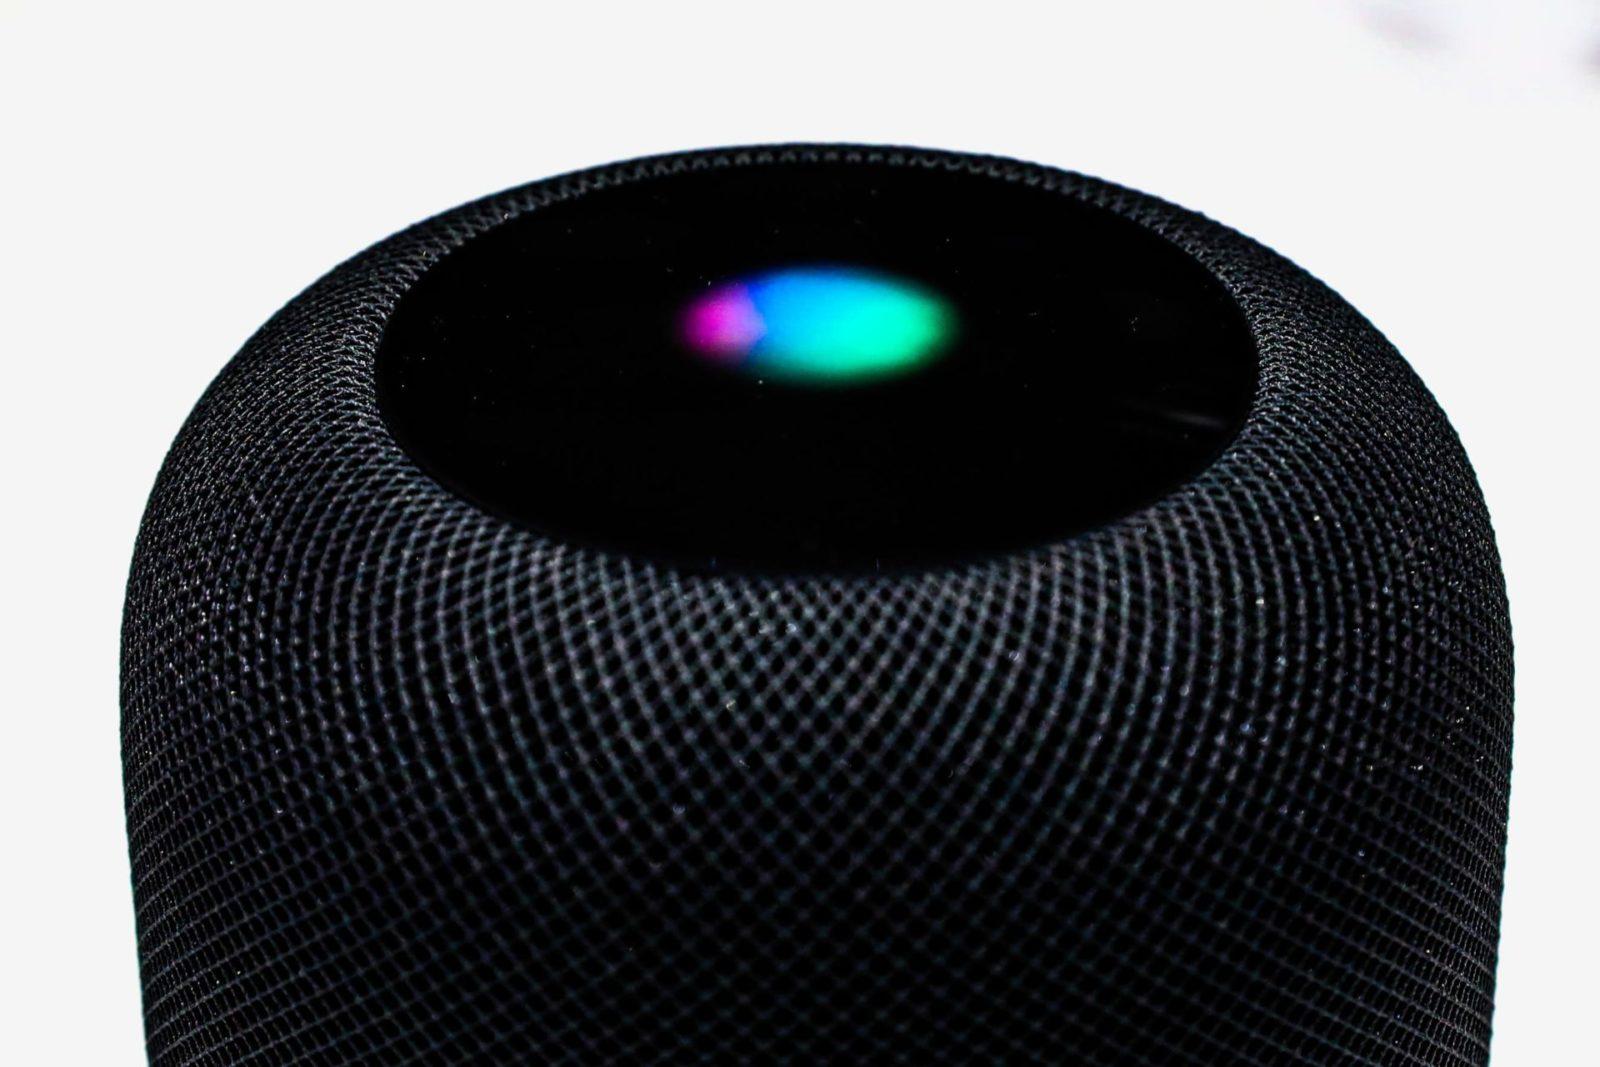 Apple continua a lavorare su un nuovo modello di HomePod